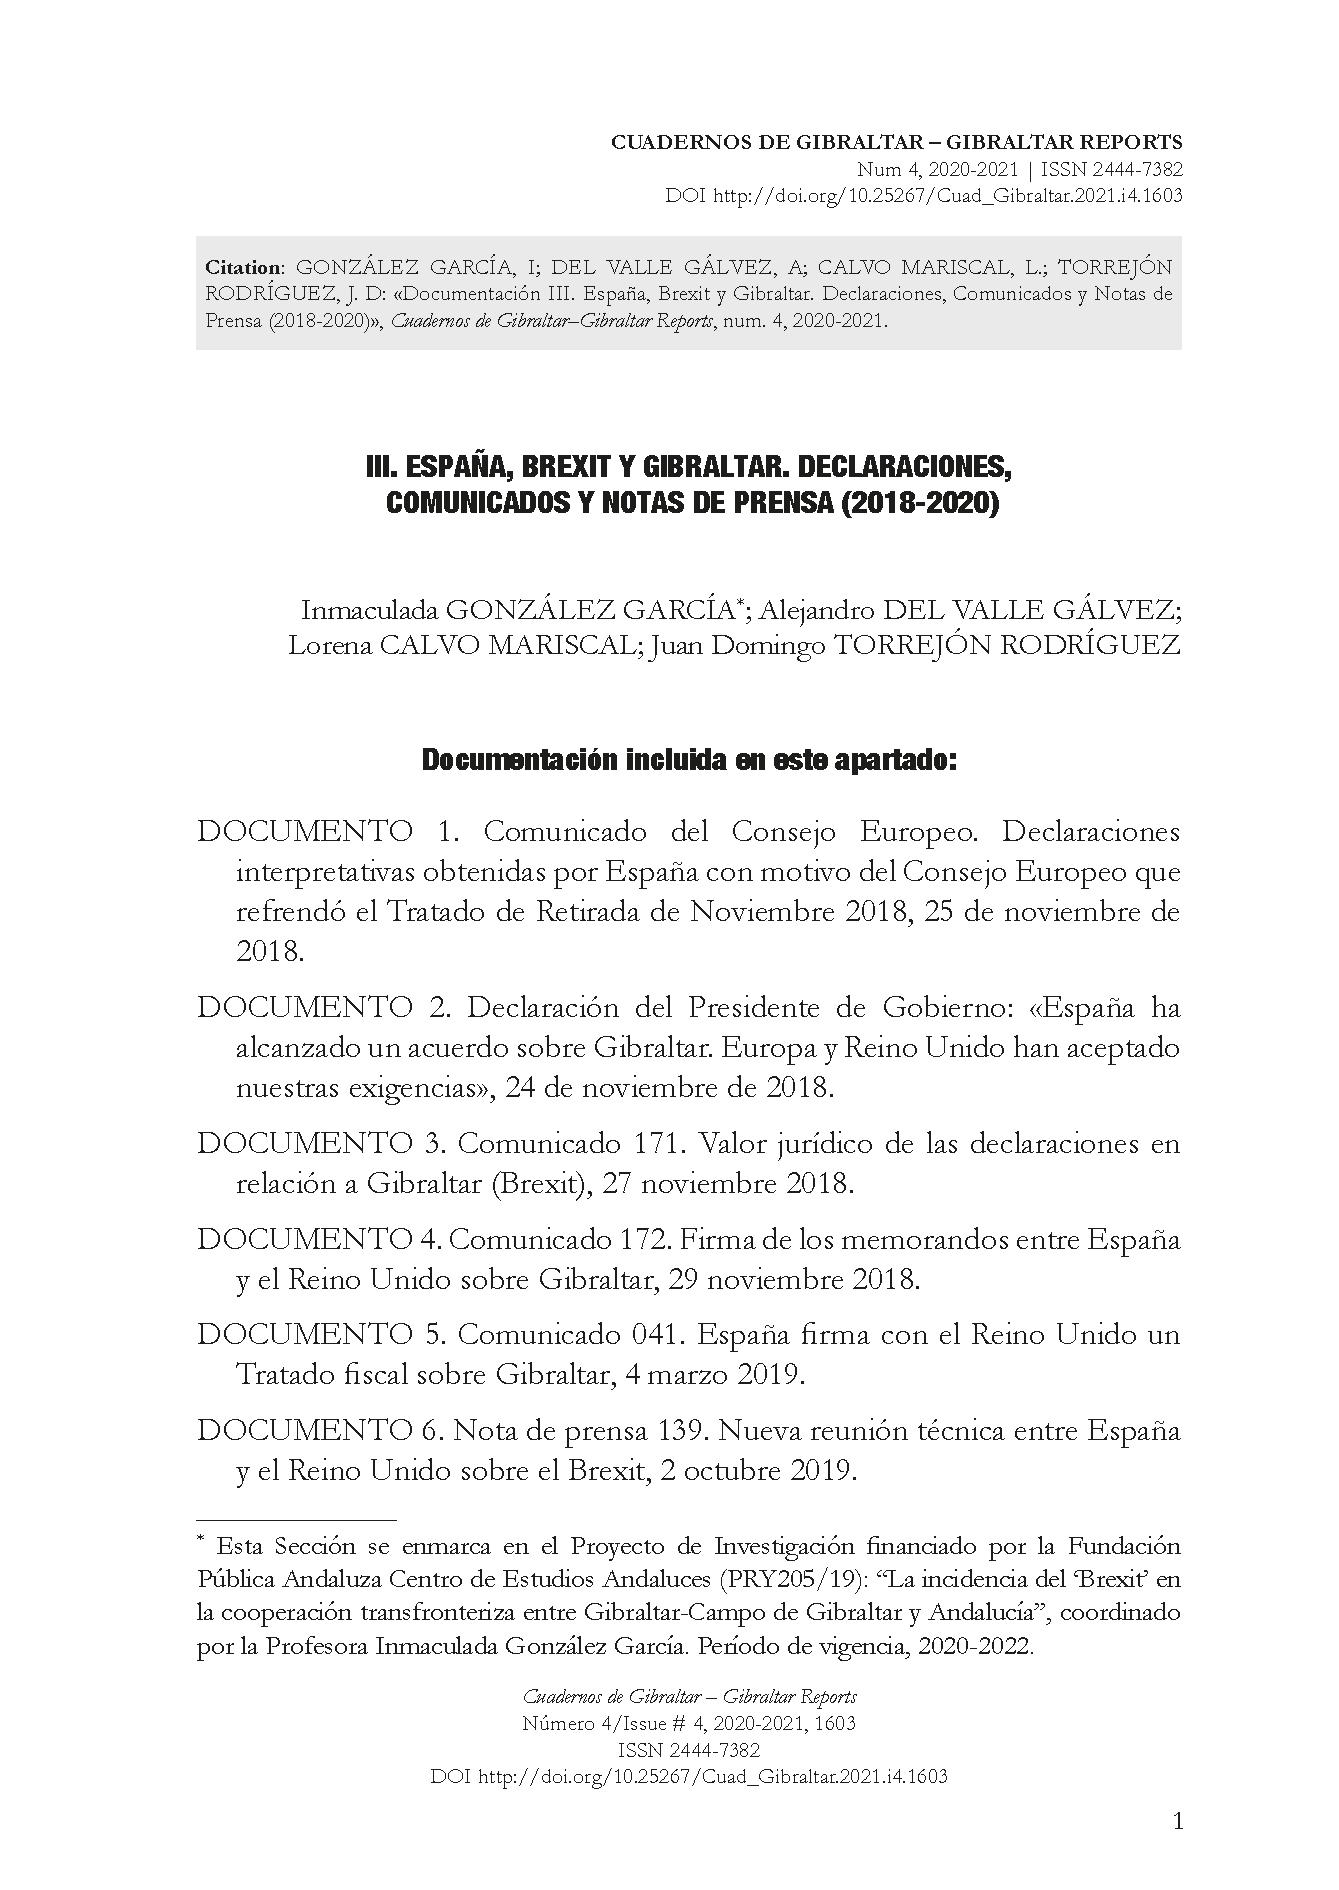 Documentación III. España, Brexit y Gibraltar. Declaraciones, Comunicados y Notas de Prensa (2018-2020)